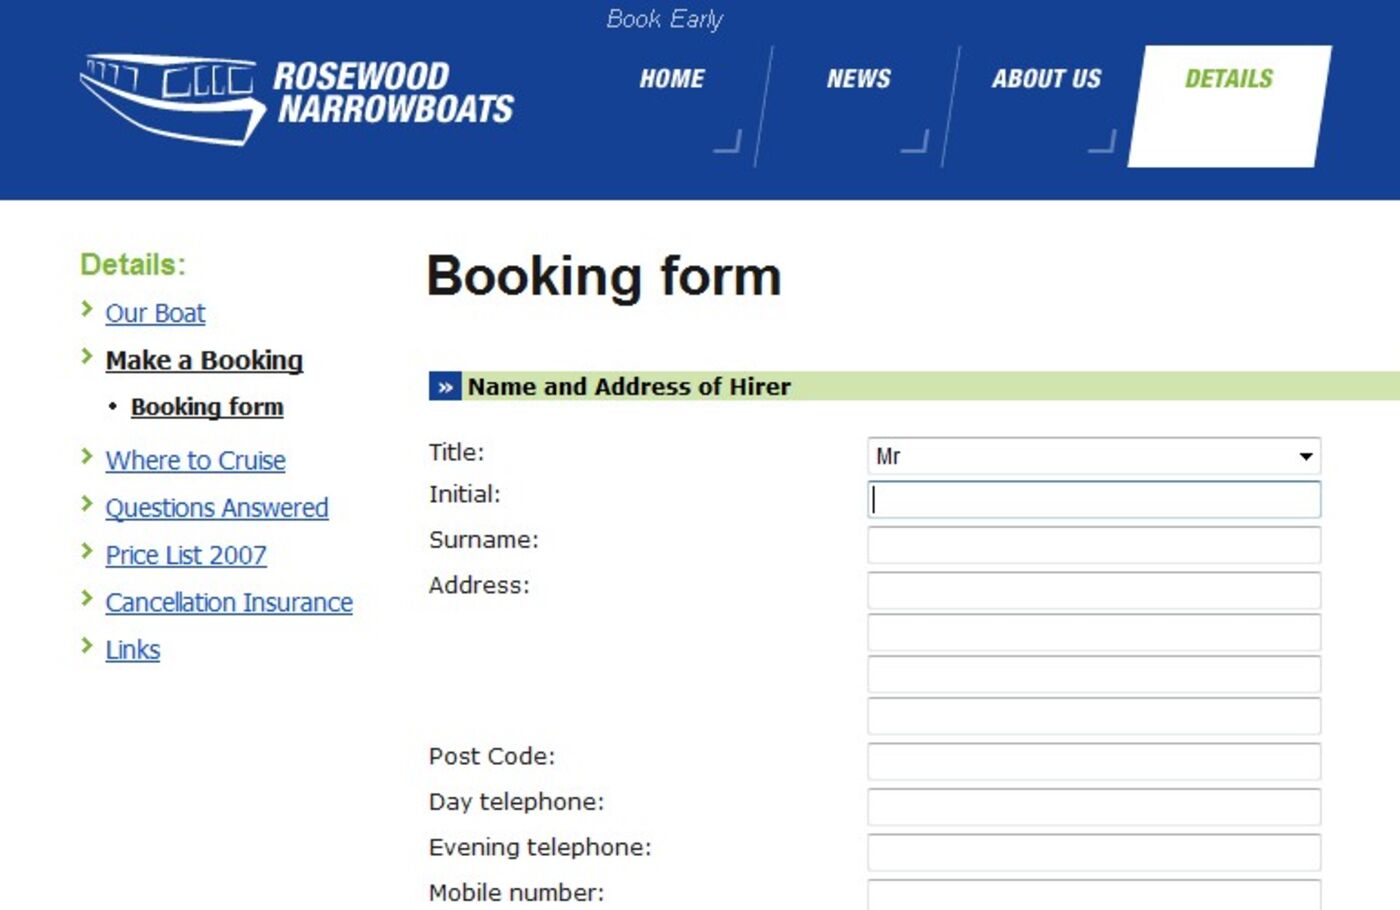 Rosewood Narrowboats Booking form